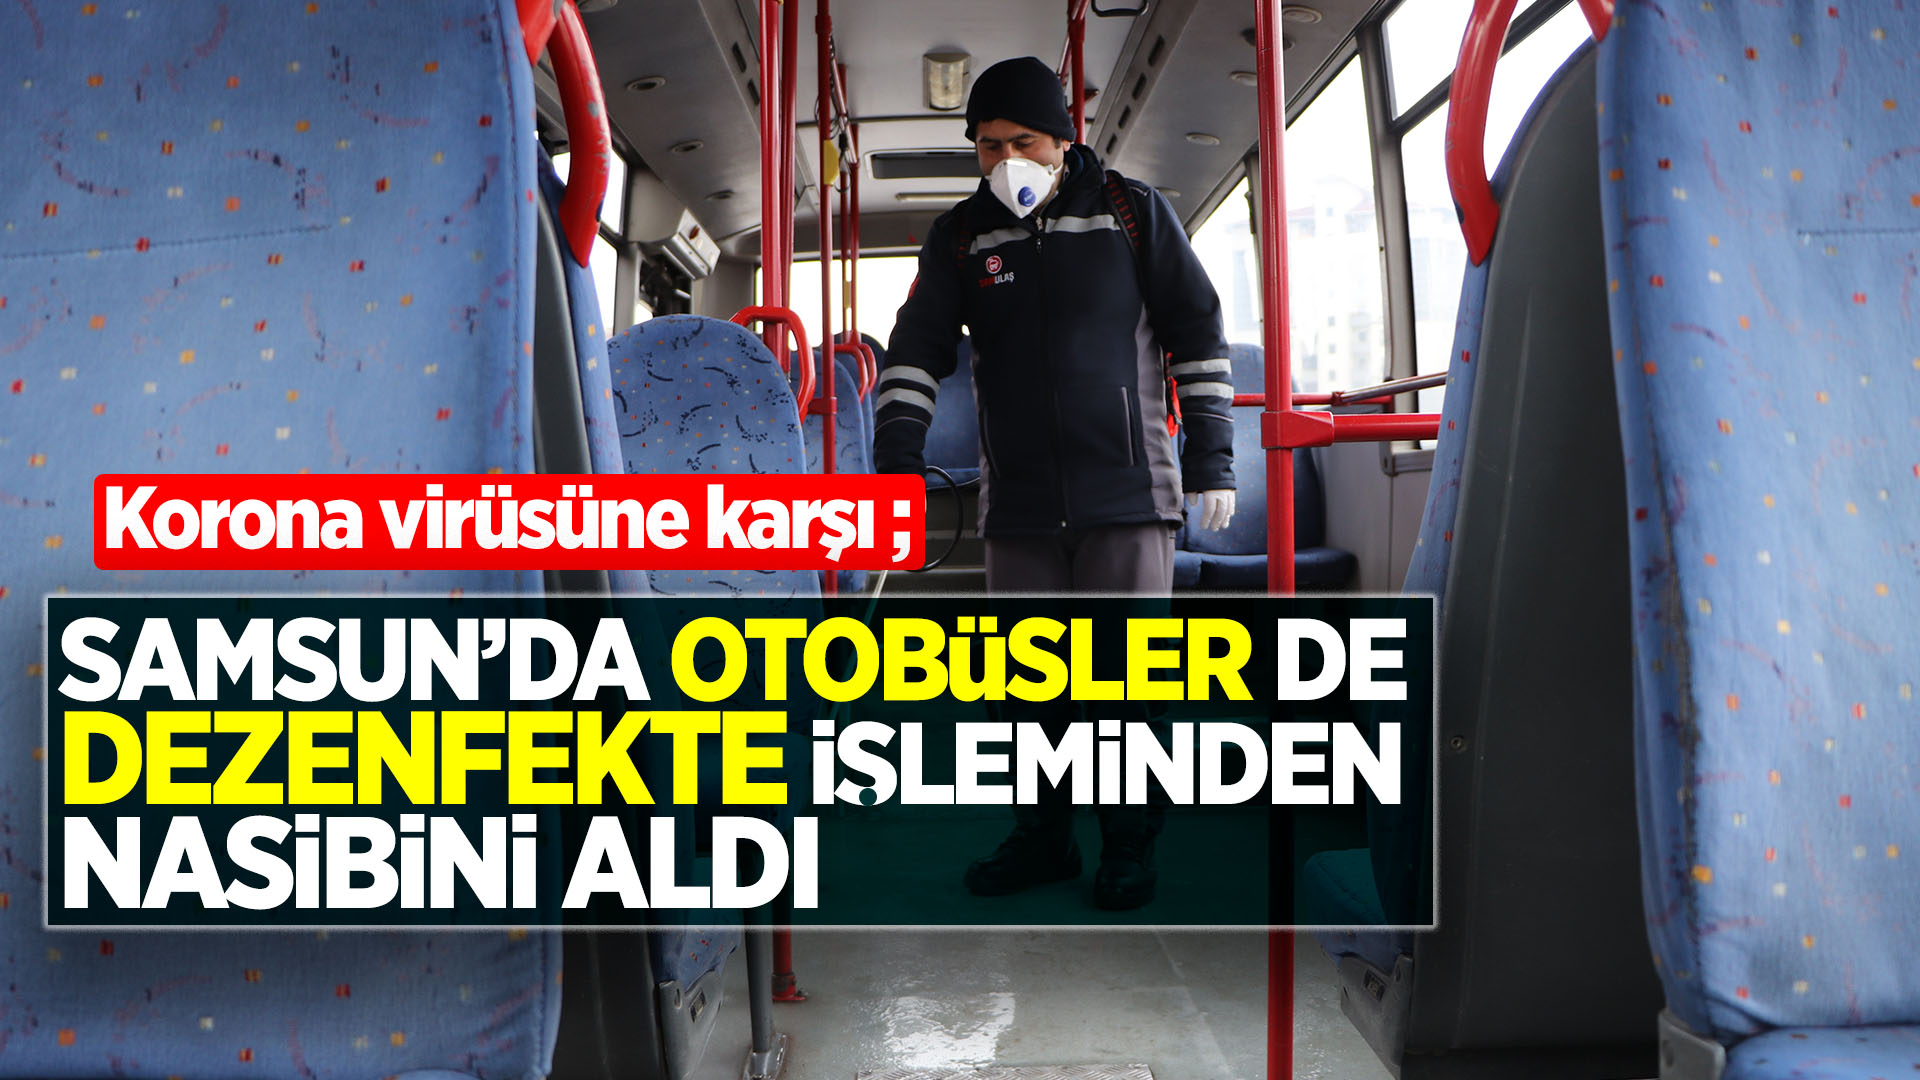 Samsun'da otobüsler de dezenfekte işleminden nasibini aldı